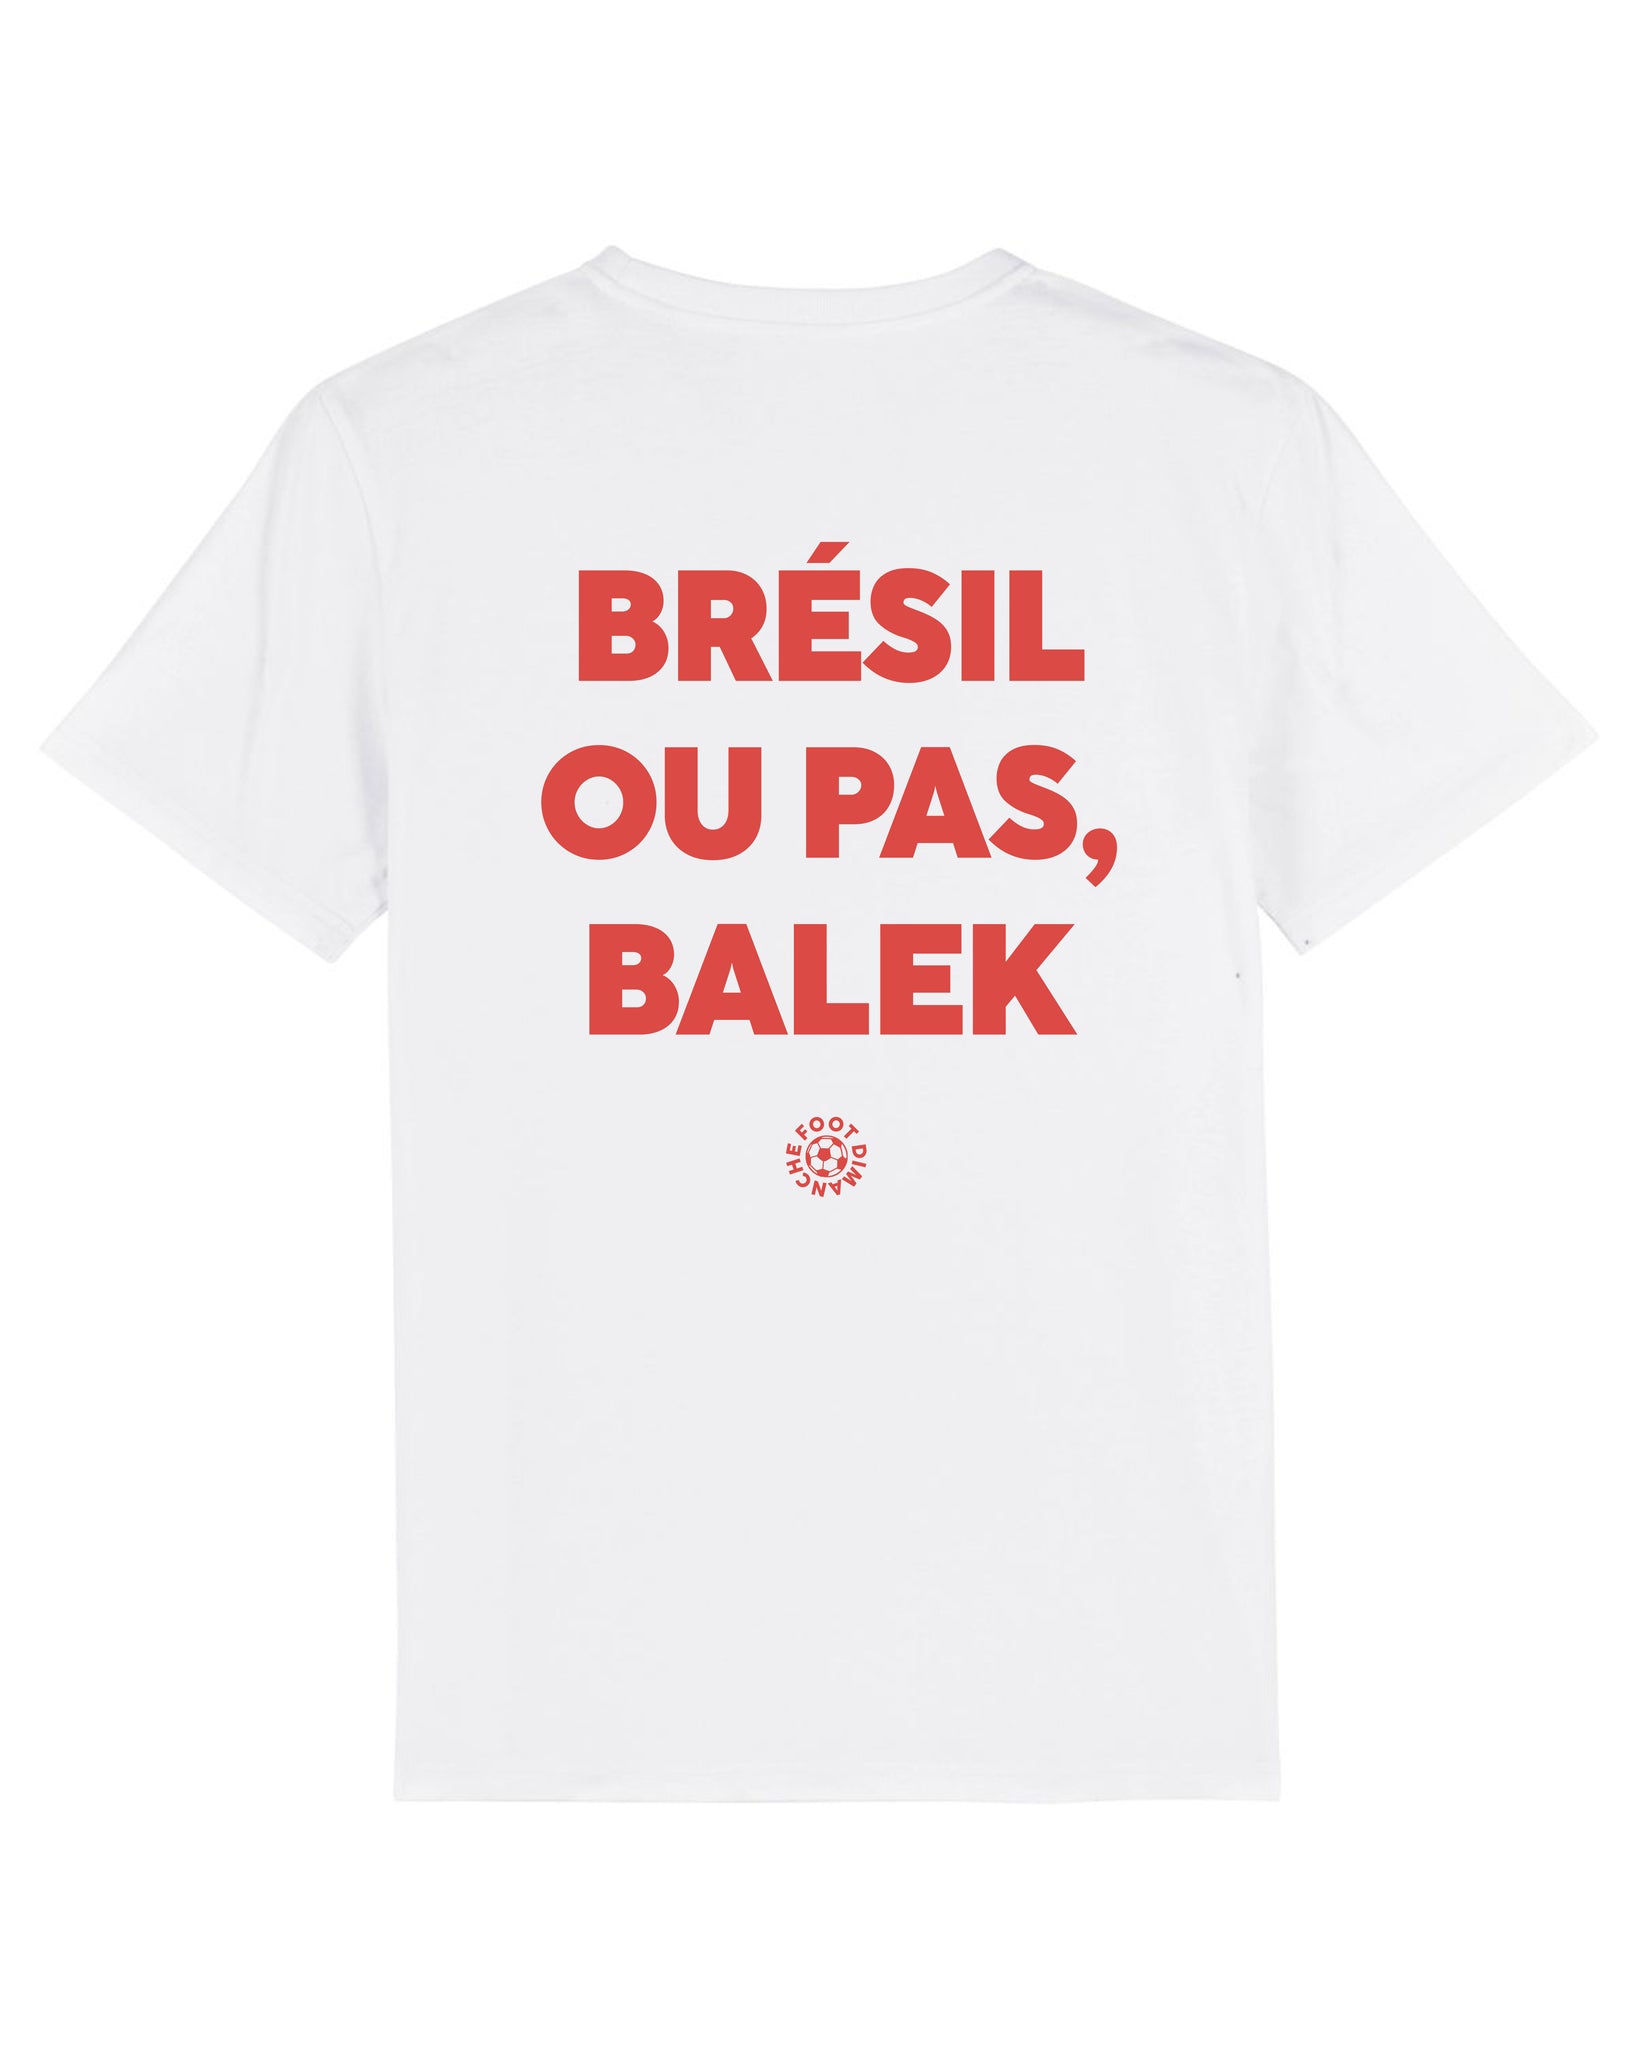 Tee Shirt Brésil ou pas Balek